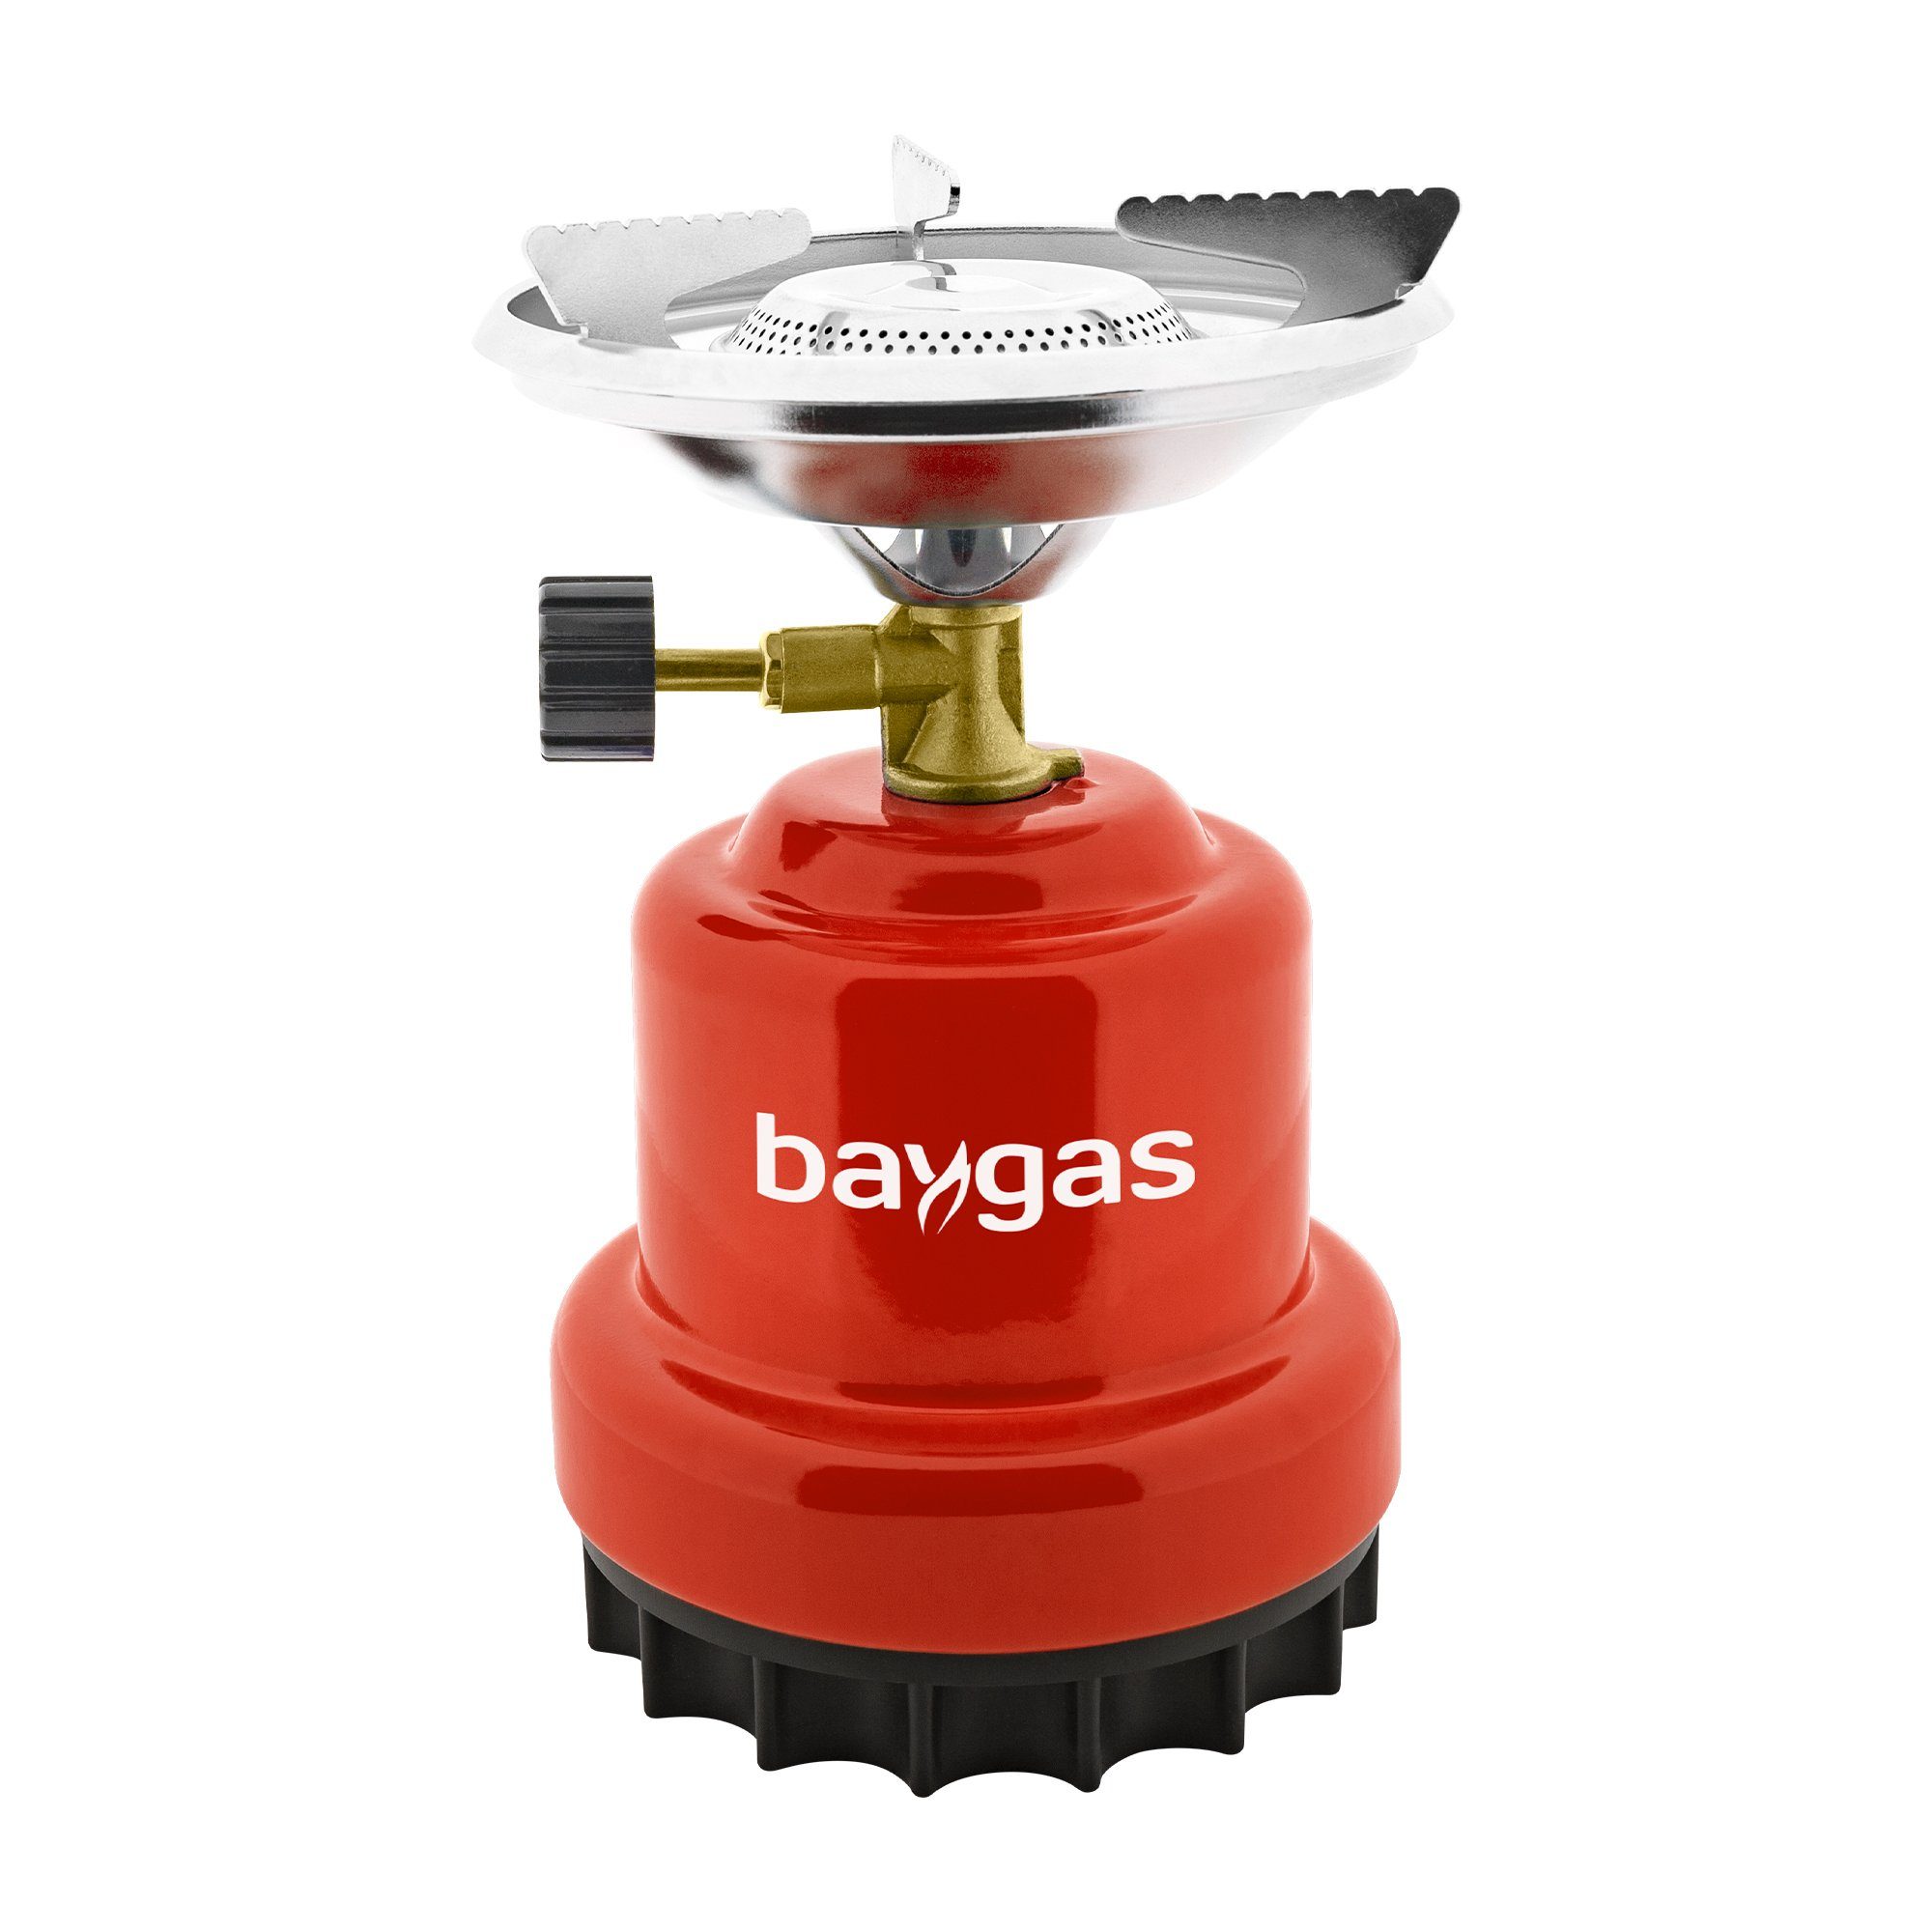 baygas Gaskocher Campingkocher/Gaskocher aus Metallkörper Rot,1- Flammig für Outdoor